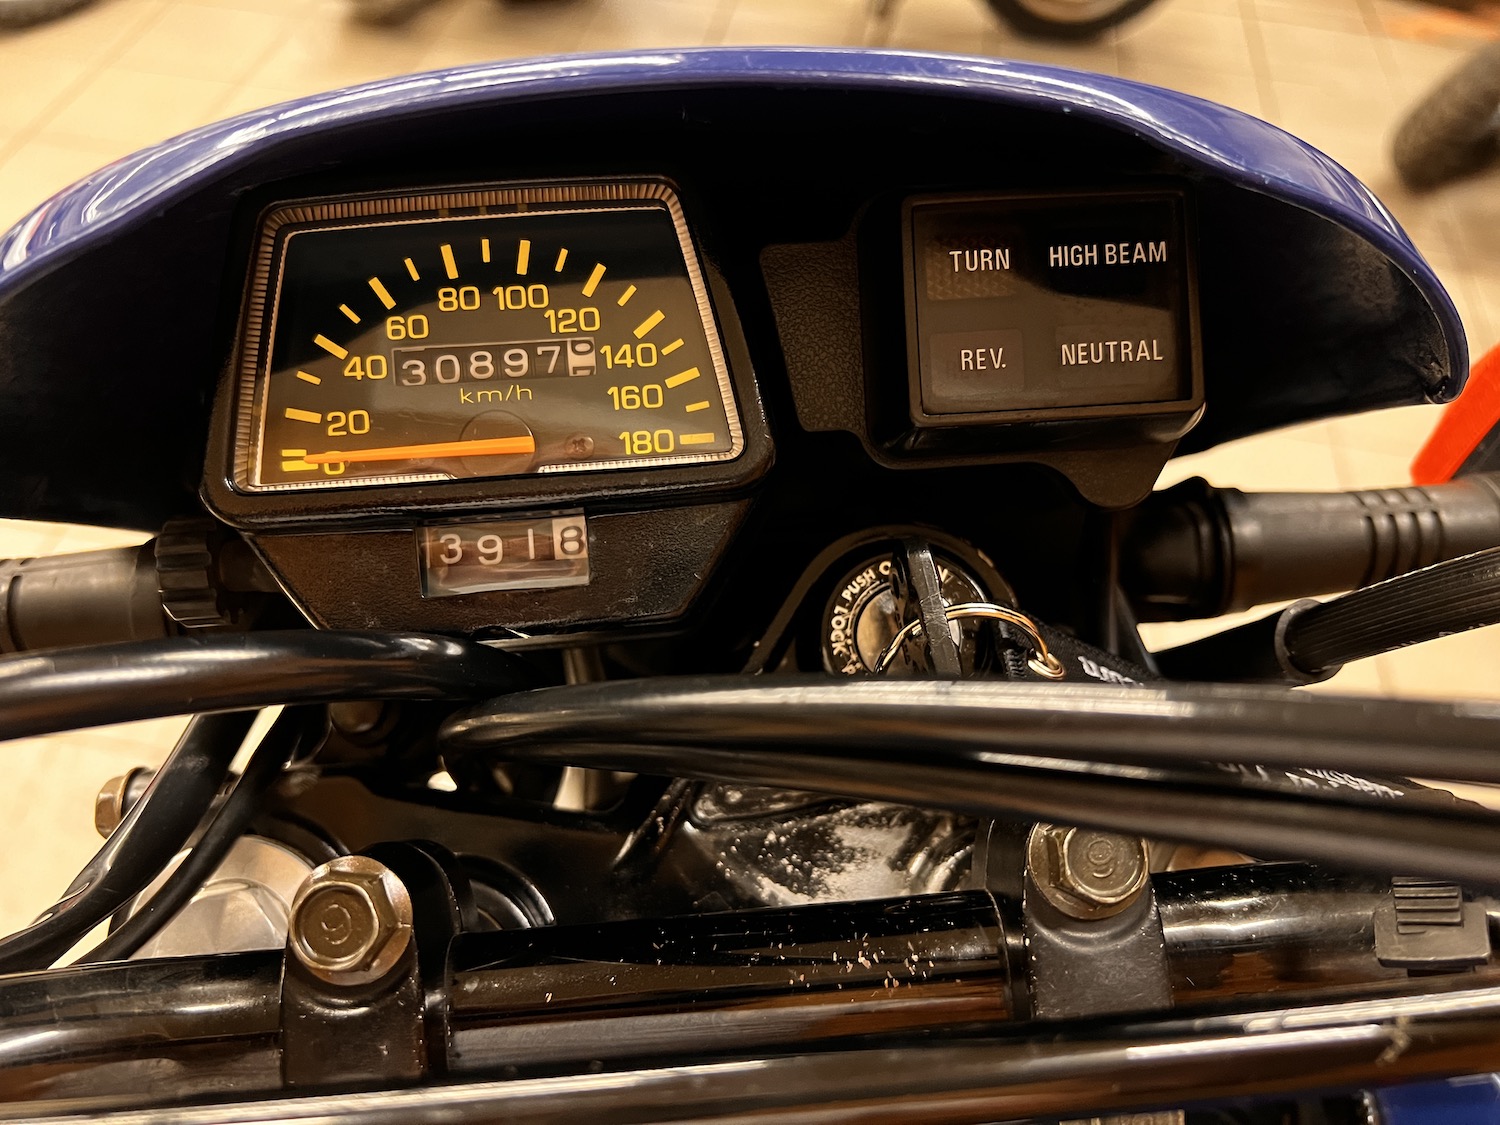 Yamaha_xt600e_Cezanne_classic_motorcycle_5-154.jpg